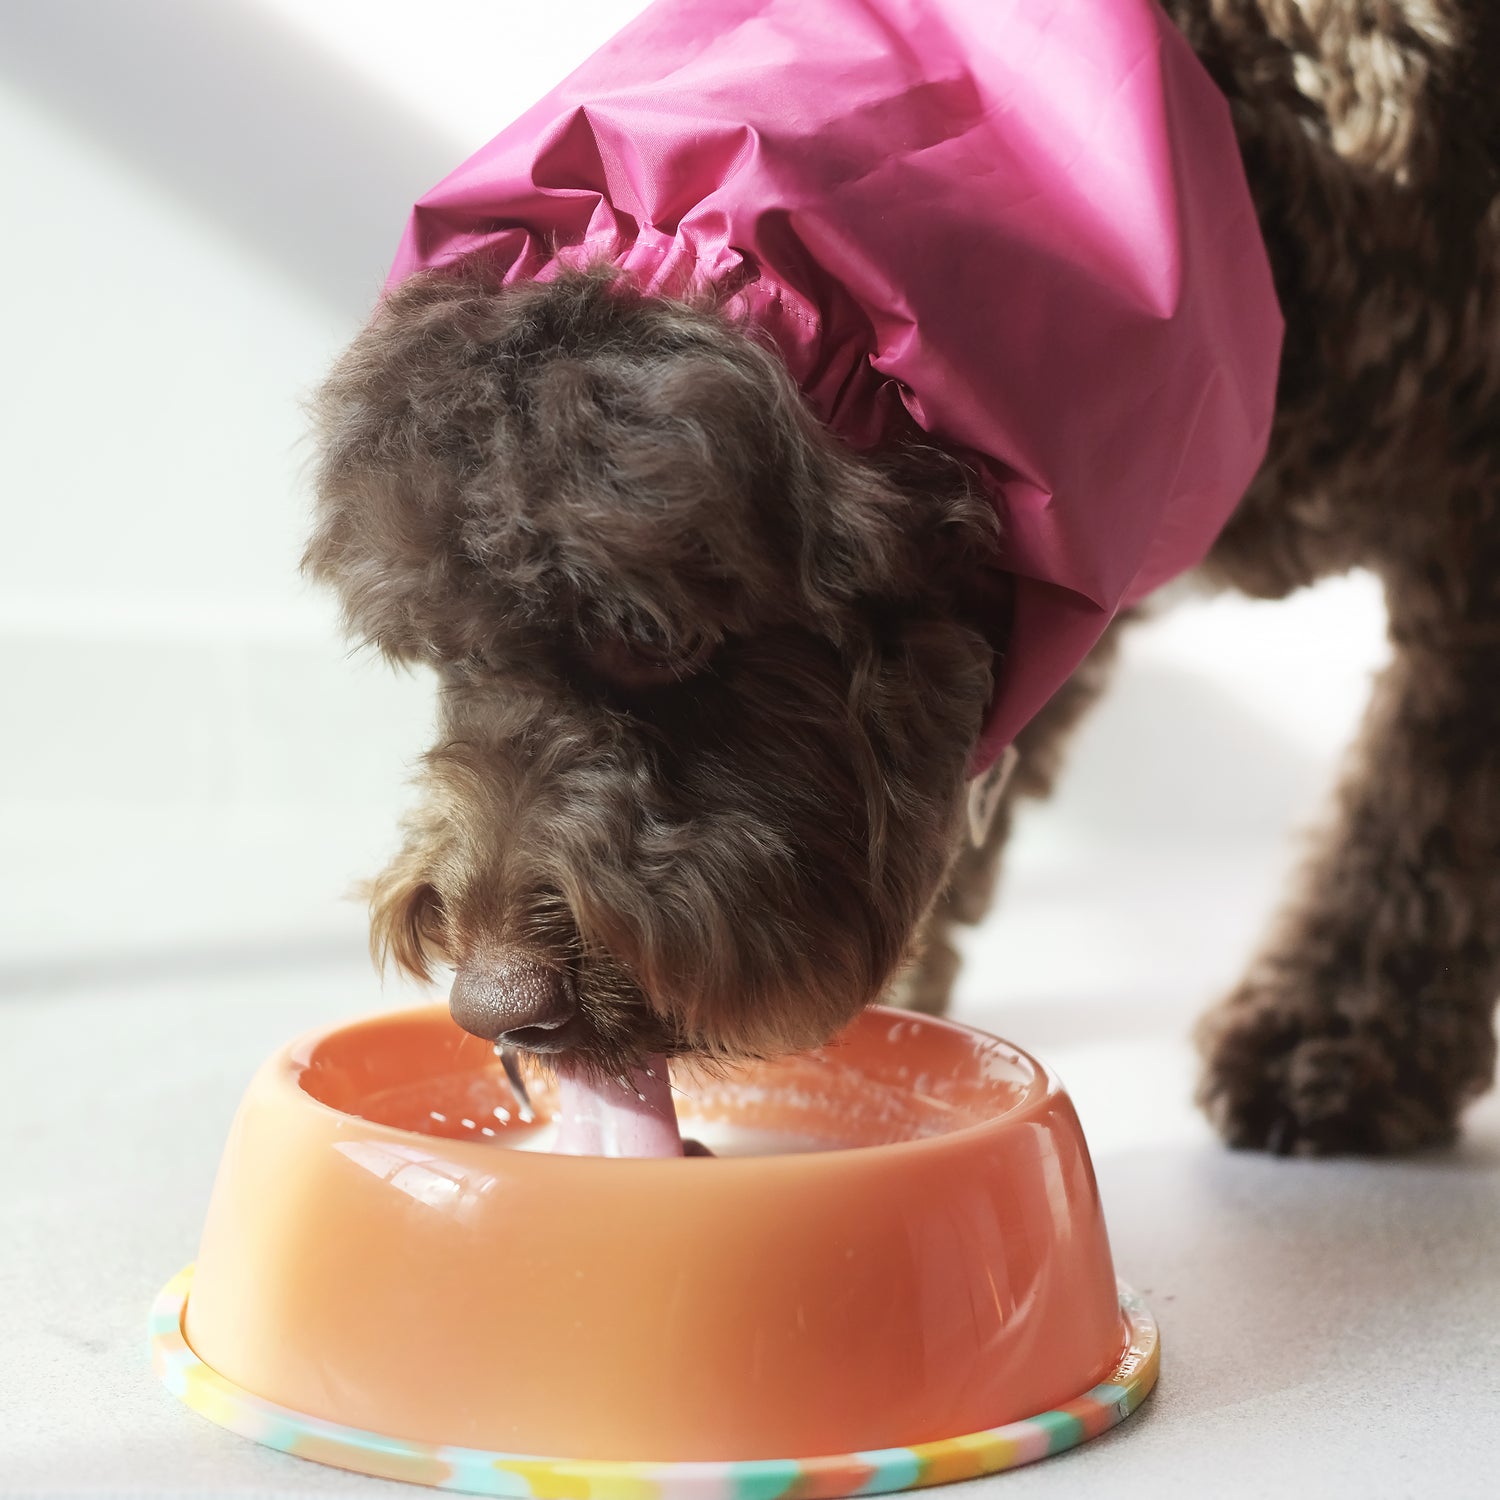 Dog Drinking Milk in Waterproof Snood